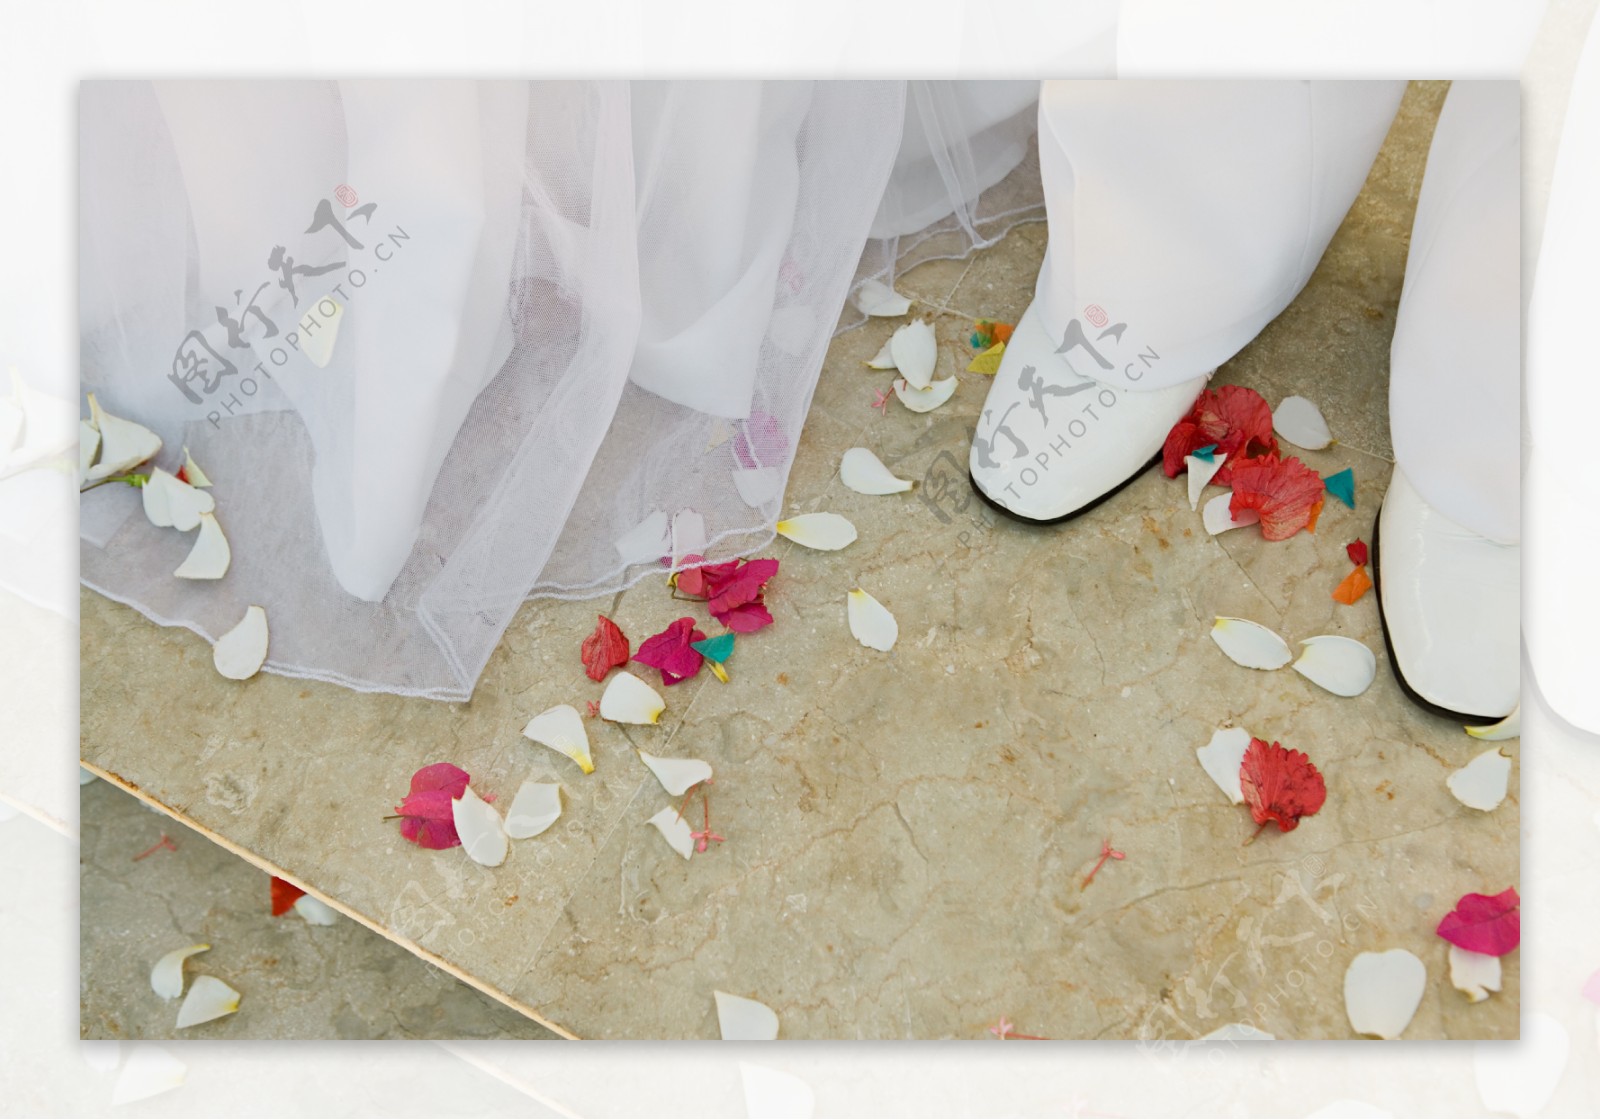 新郎新娘脚下的花瓣特写图片图片